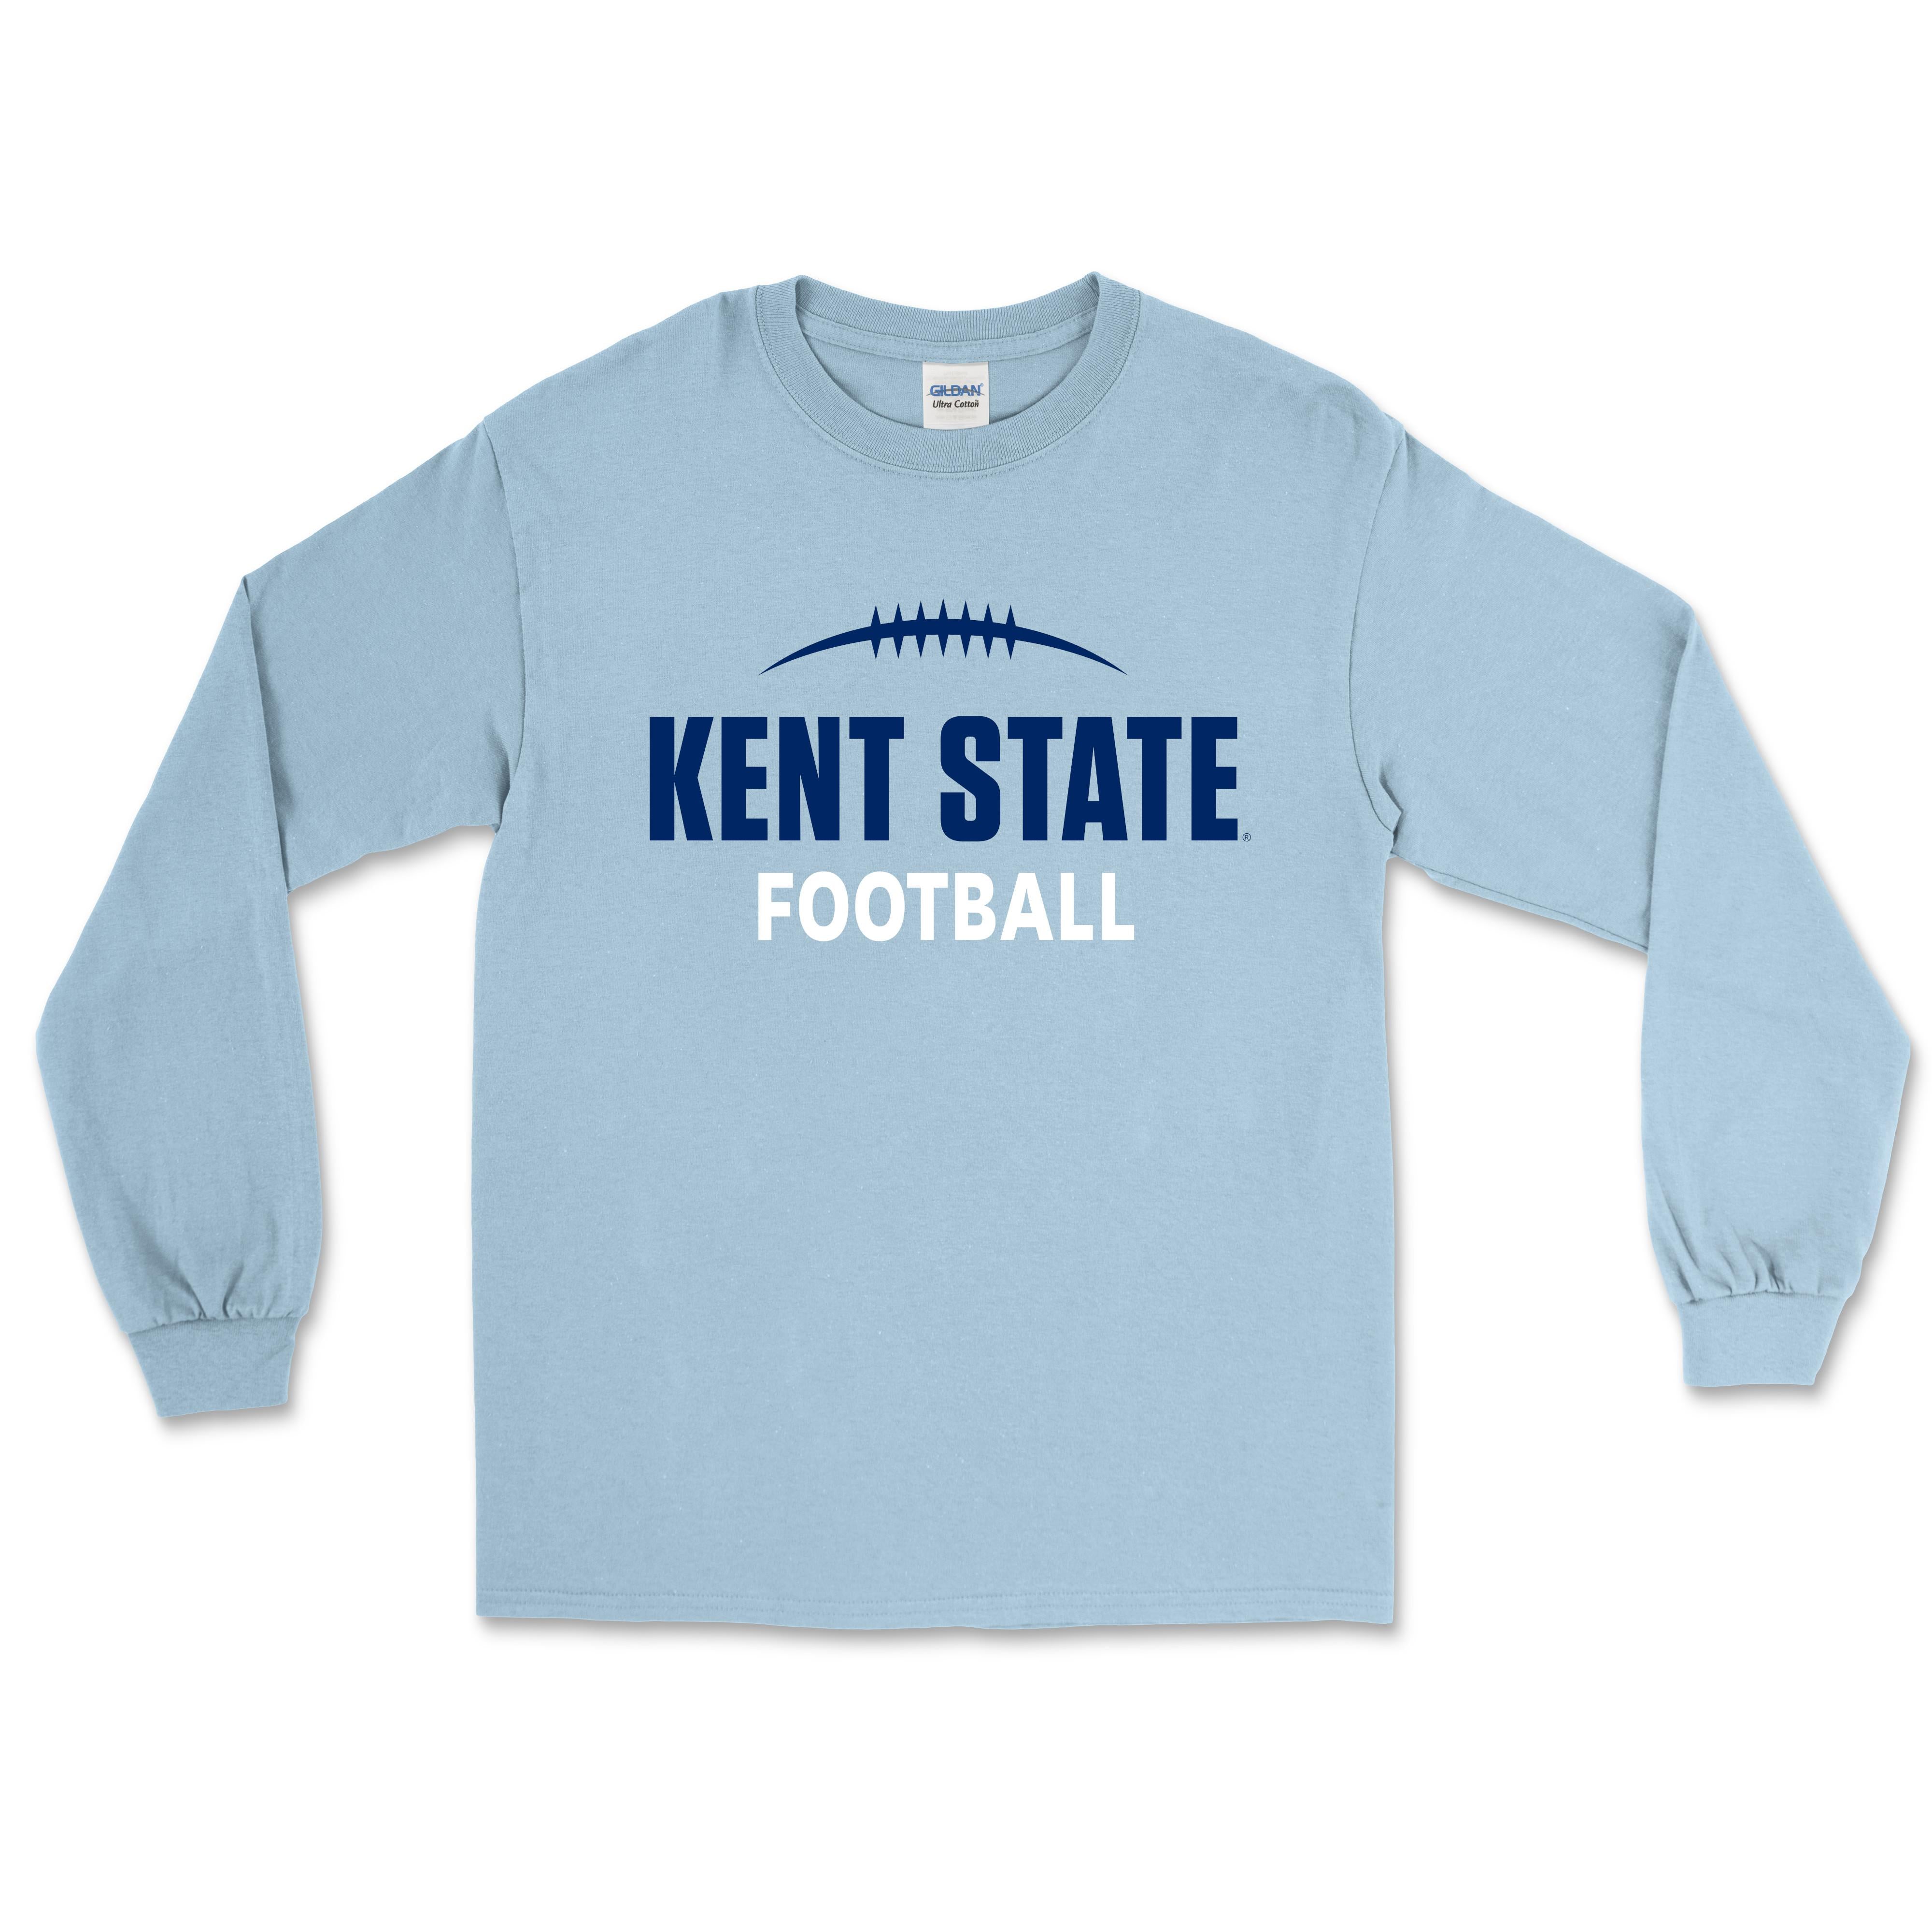 Kent State Light Blue Football Long Sleeve T-Shirt